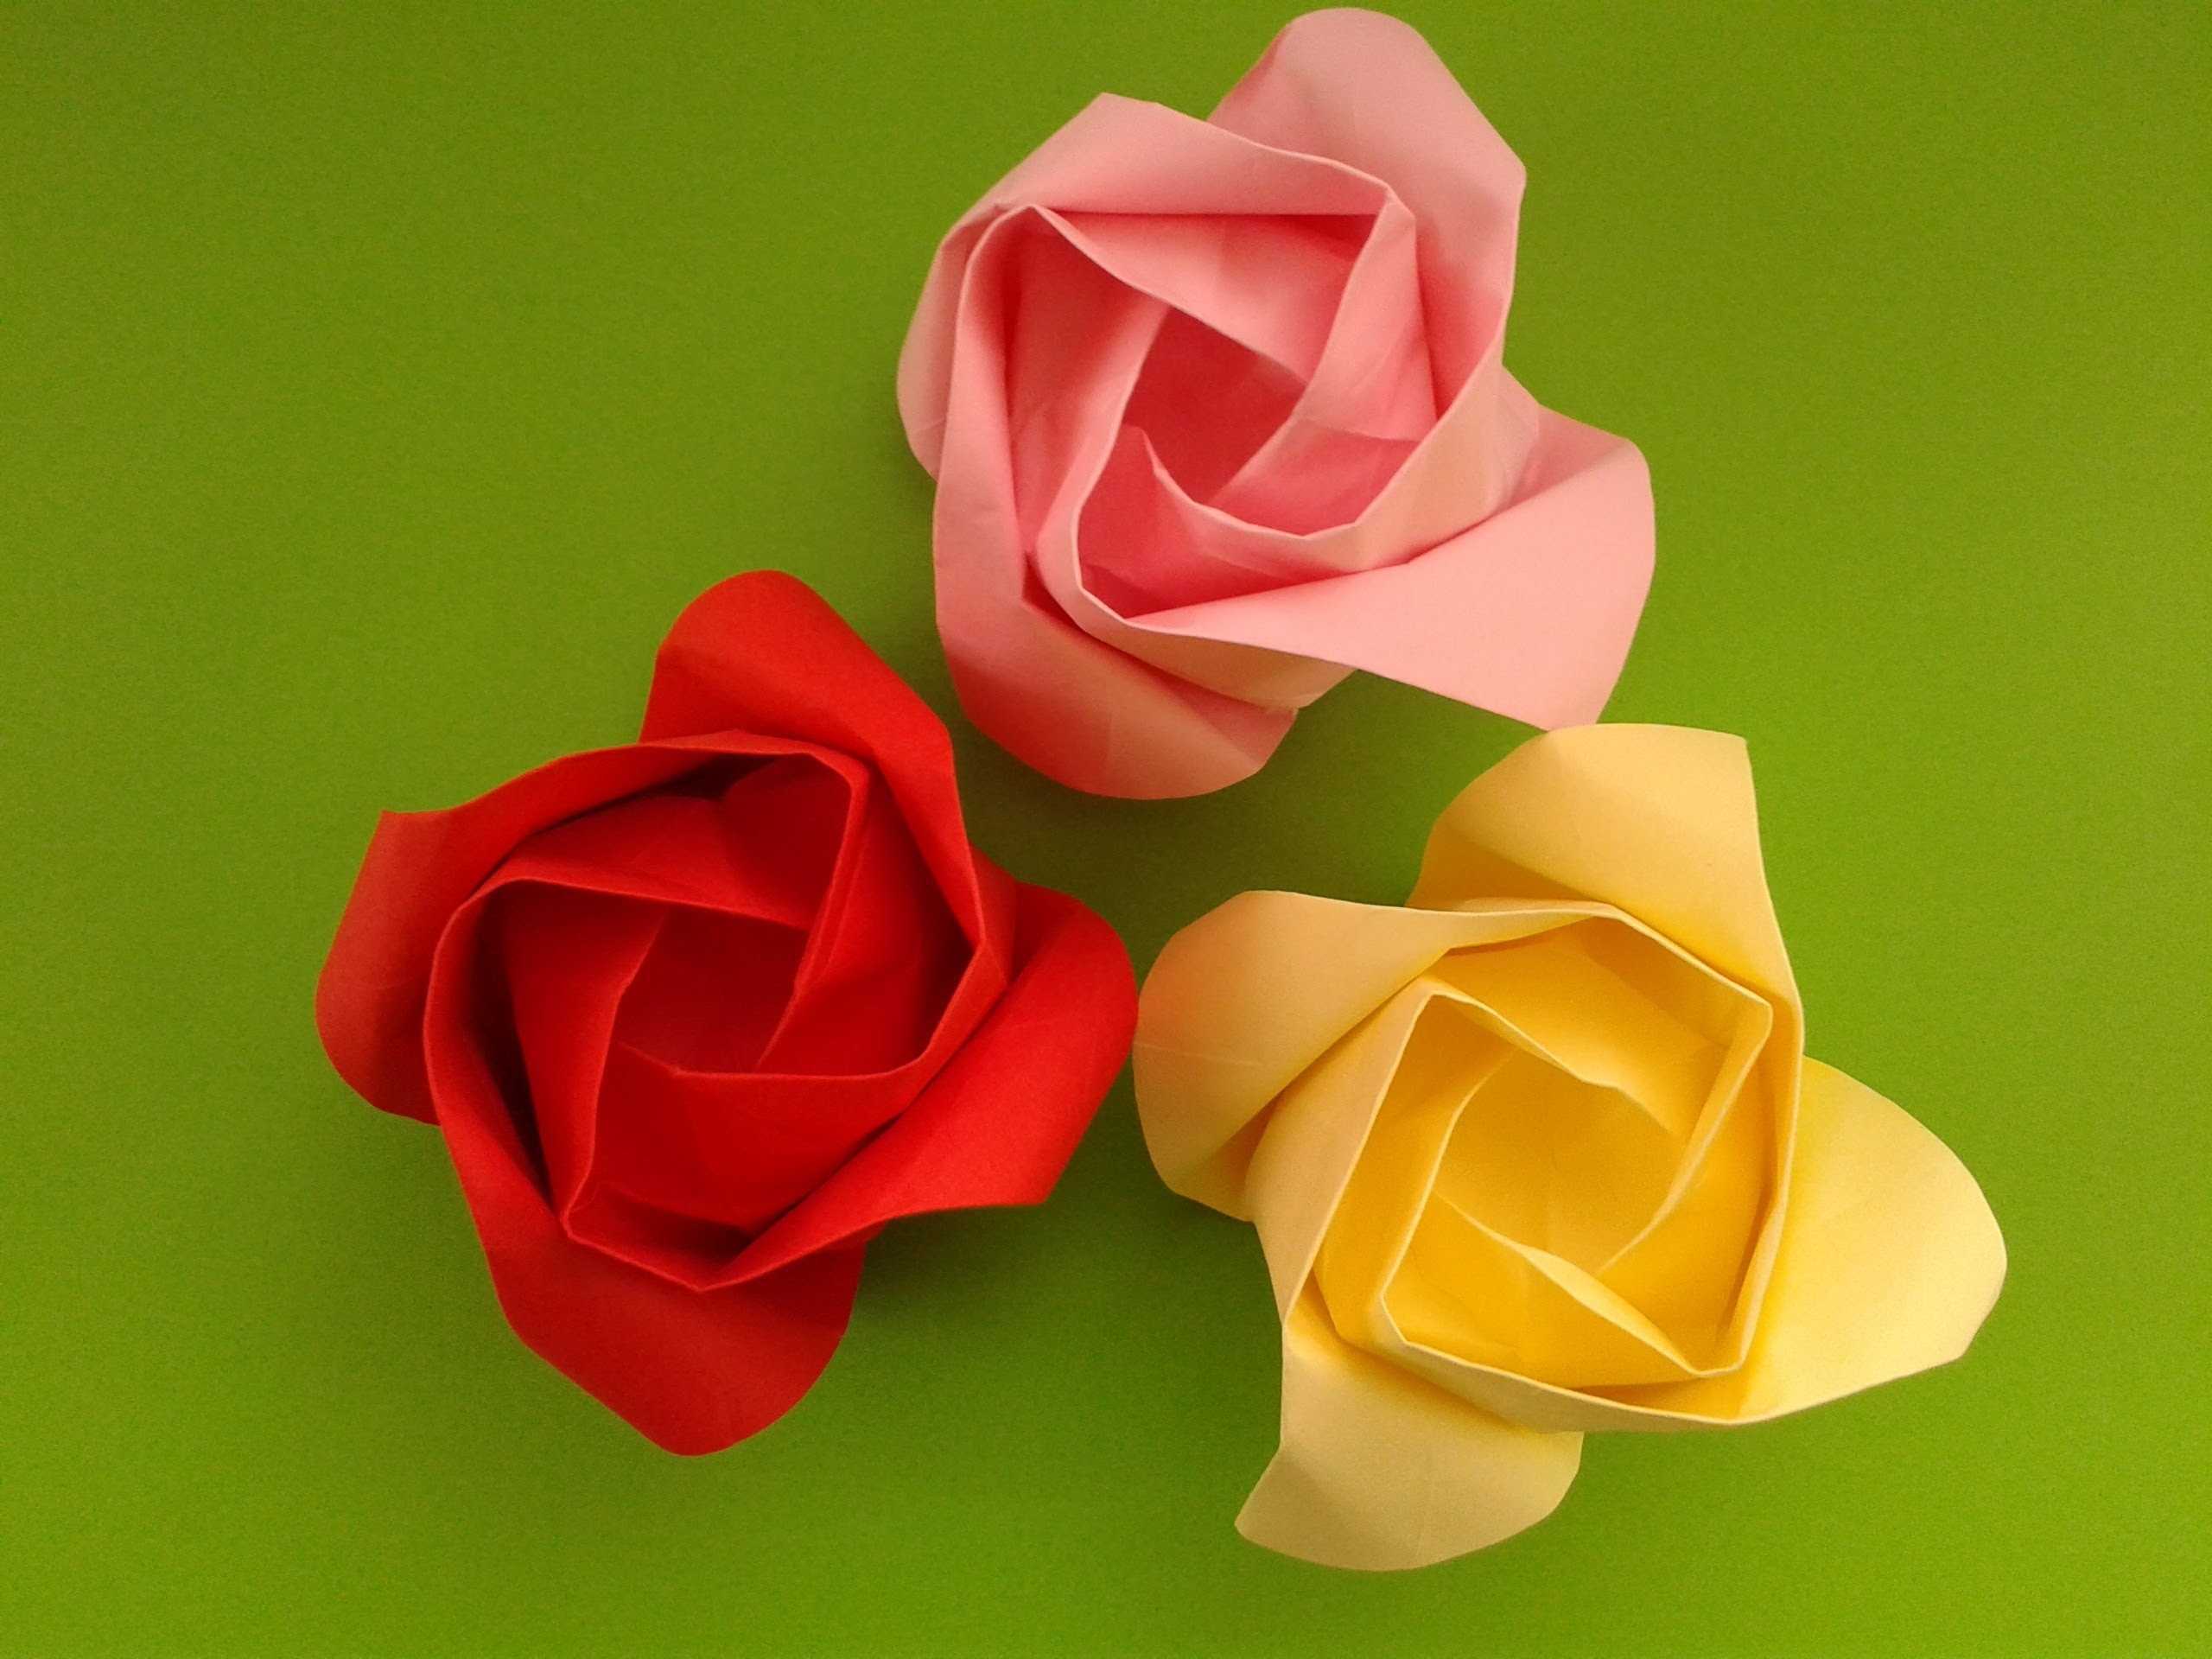 Как сделать розу из бумаги, фоамирана, фетра, ленты и других материалов (15 мастер-классов)